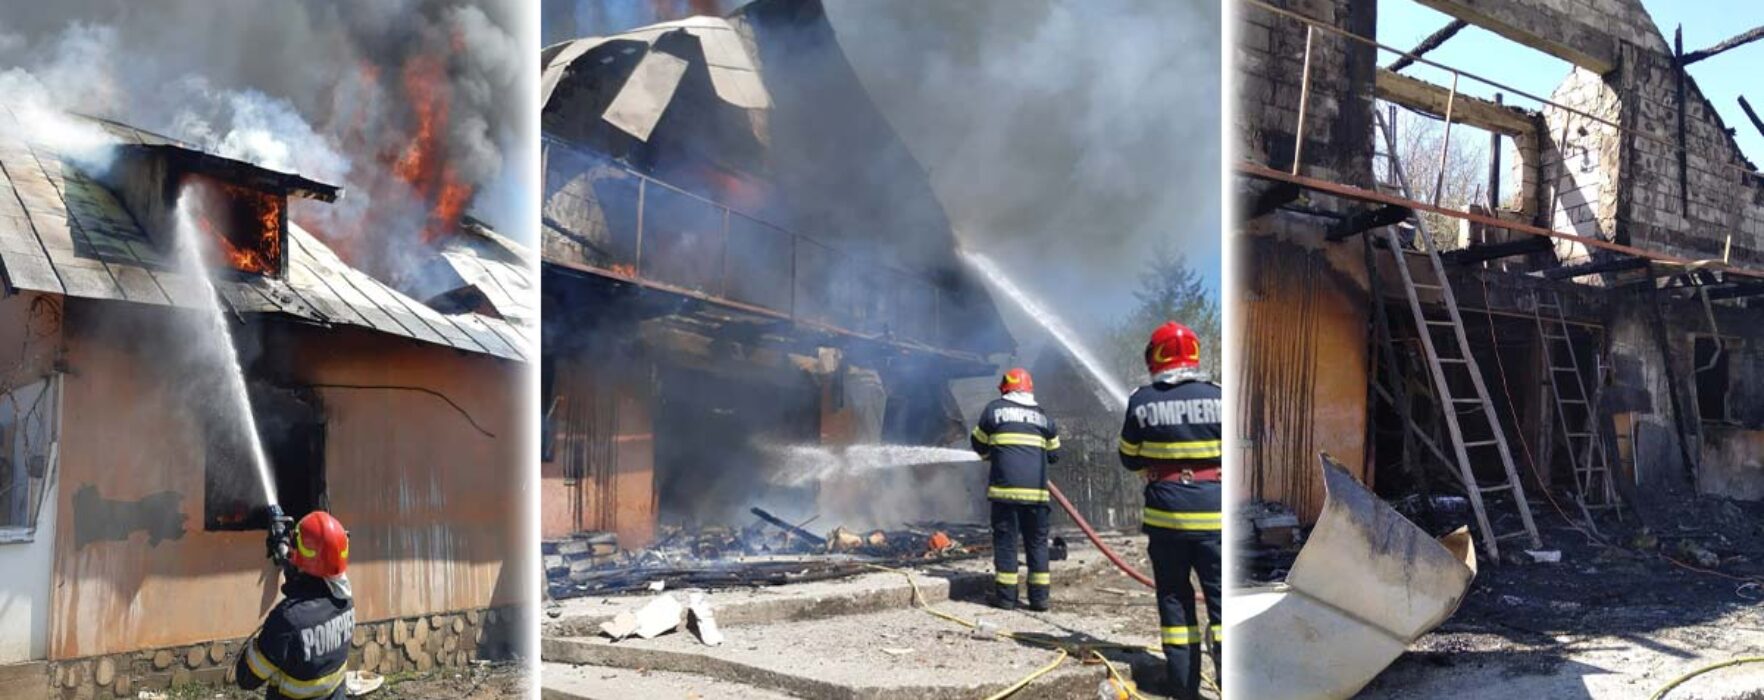 Dâmboviţa: Explozie urmată de incendiu în satul Saru, trei persoane rănite